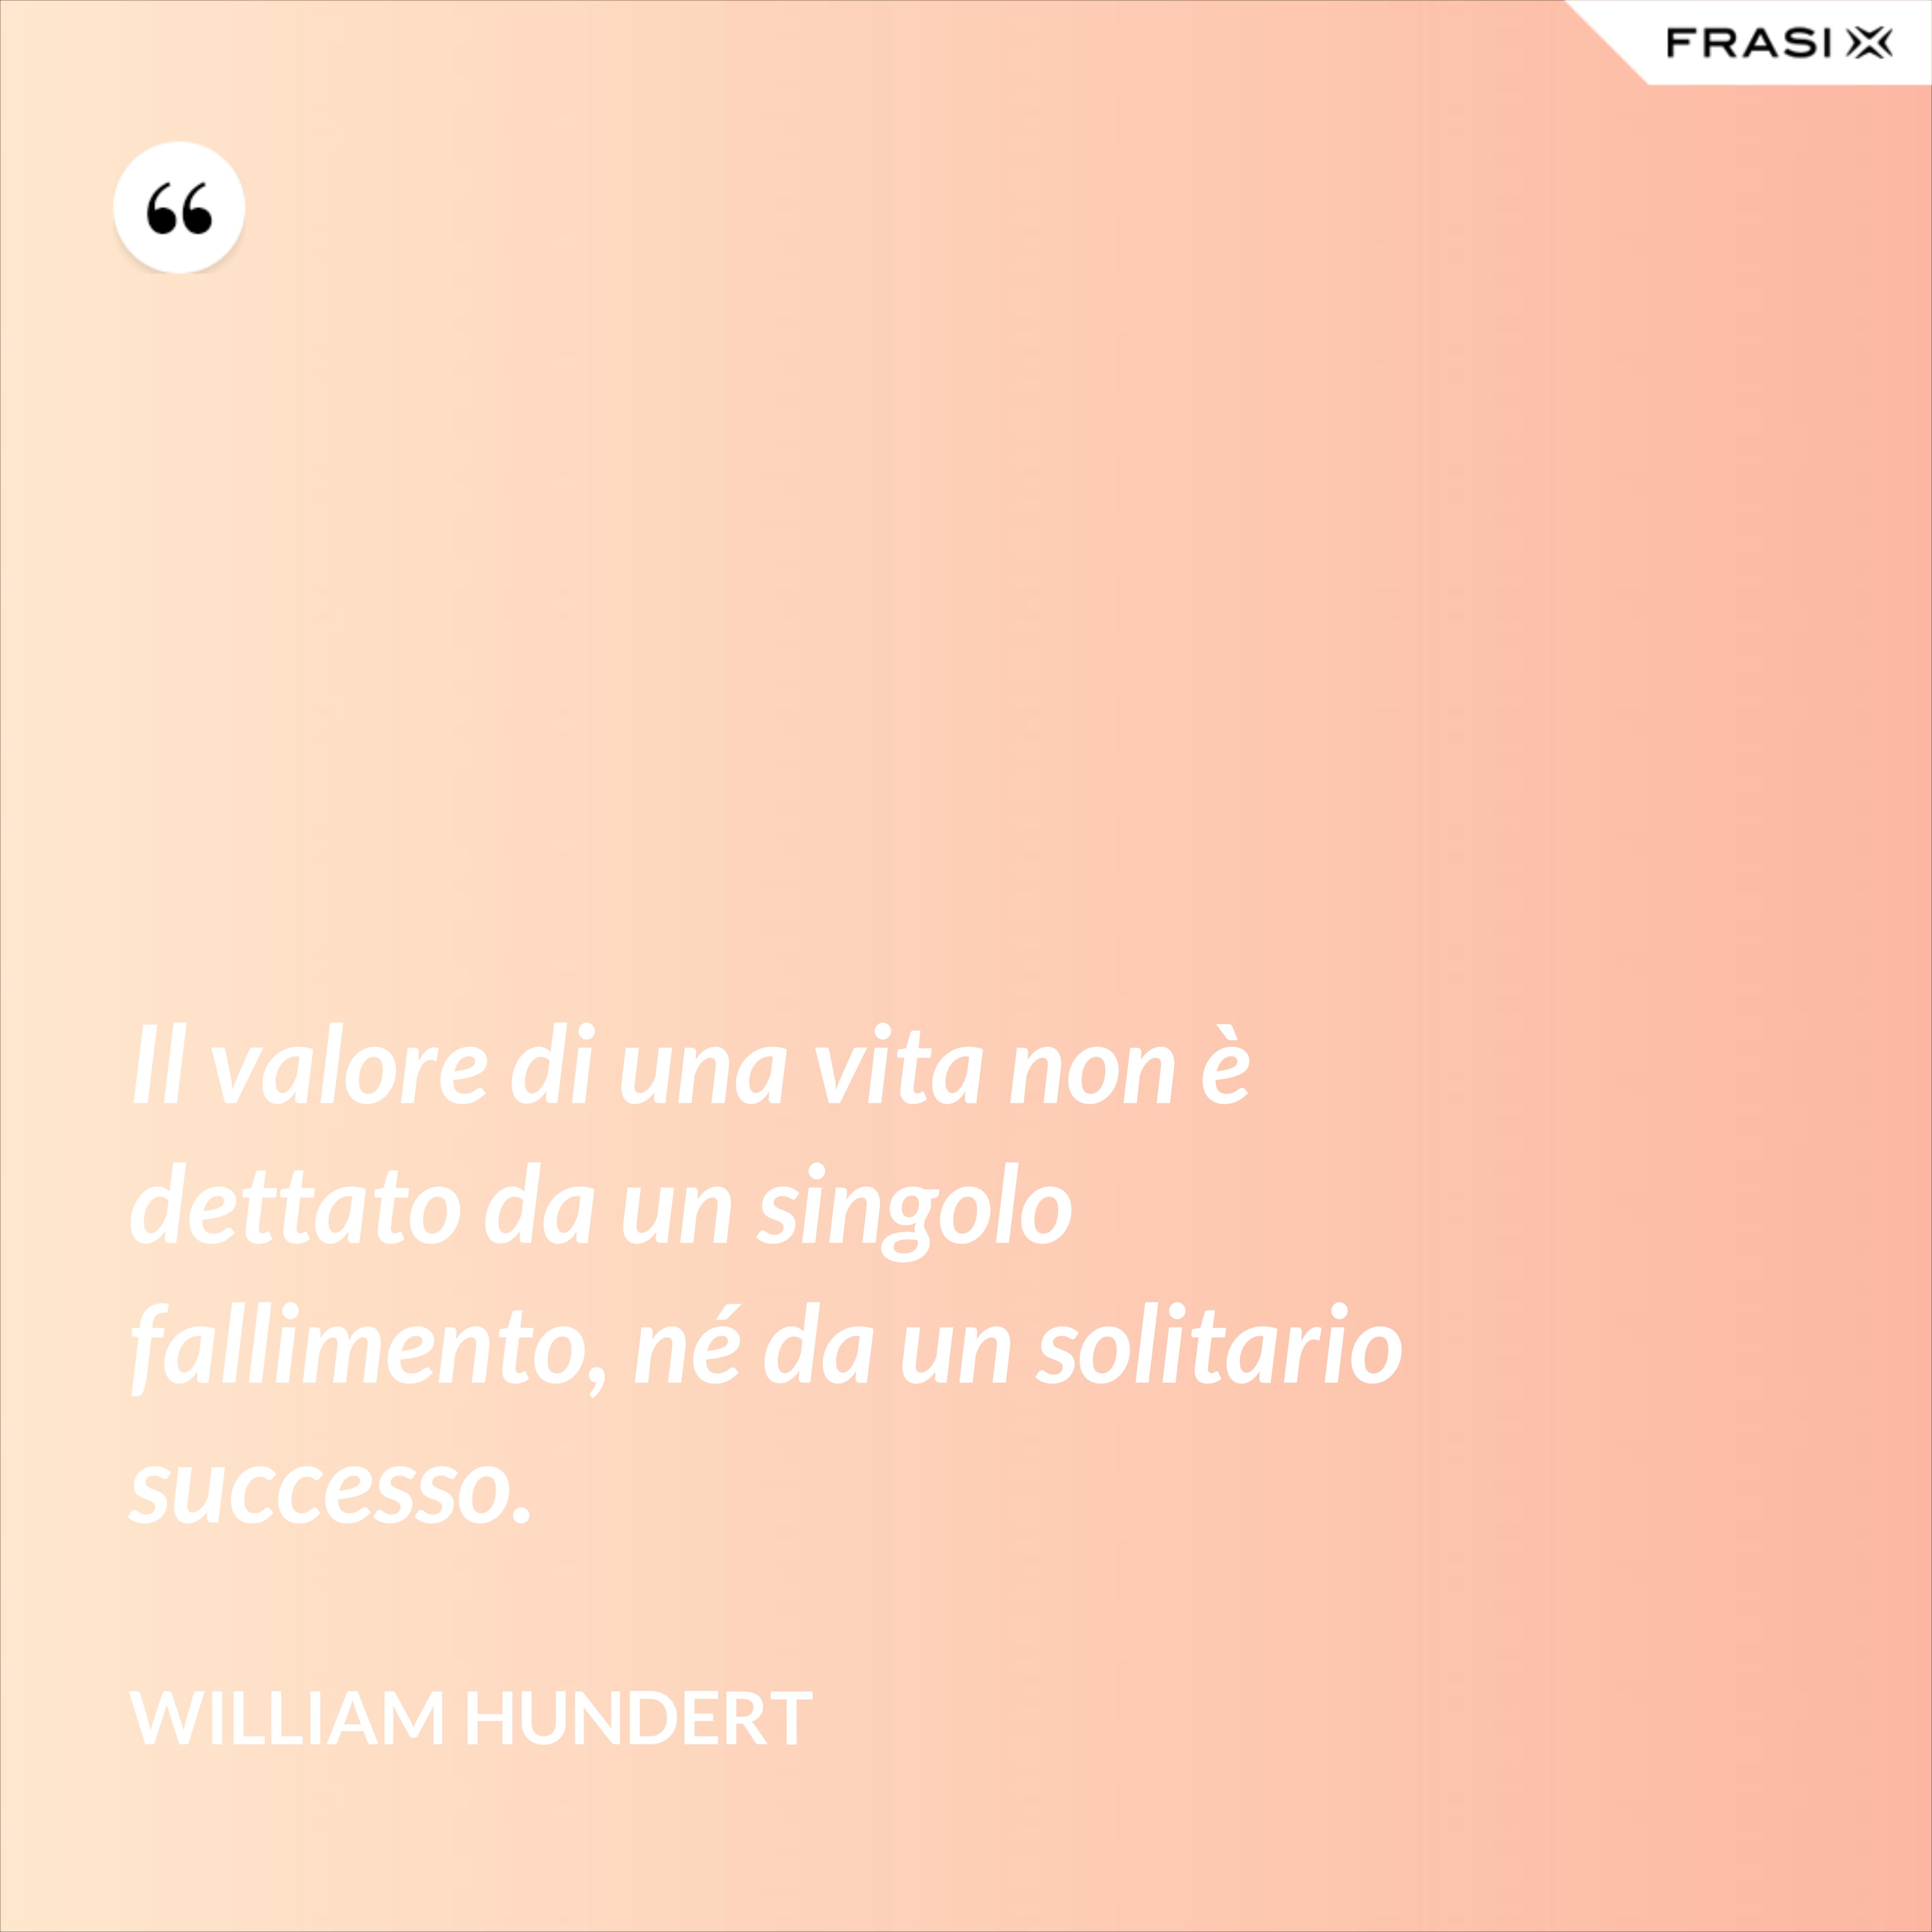 Il valore di una vita non è dettato da un singolo fallimento, né da un solitario successo. - William Hundert